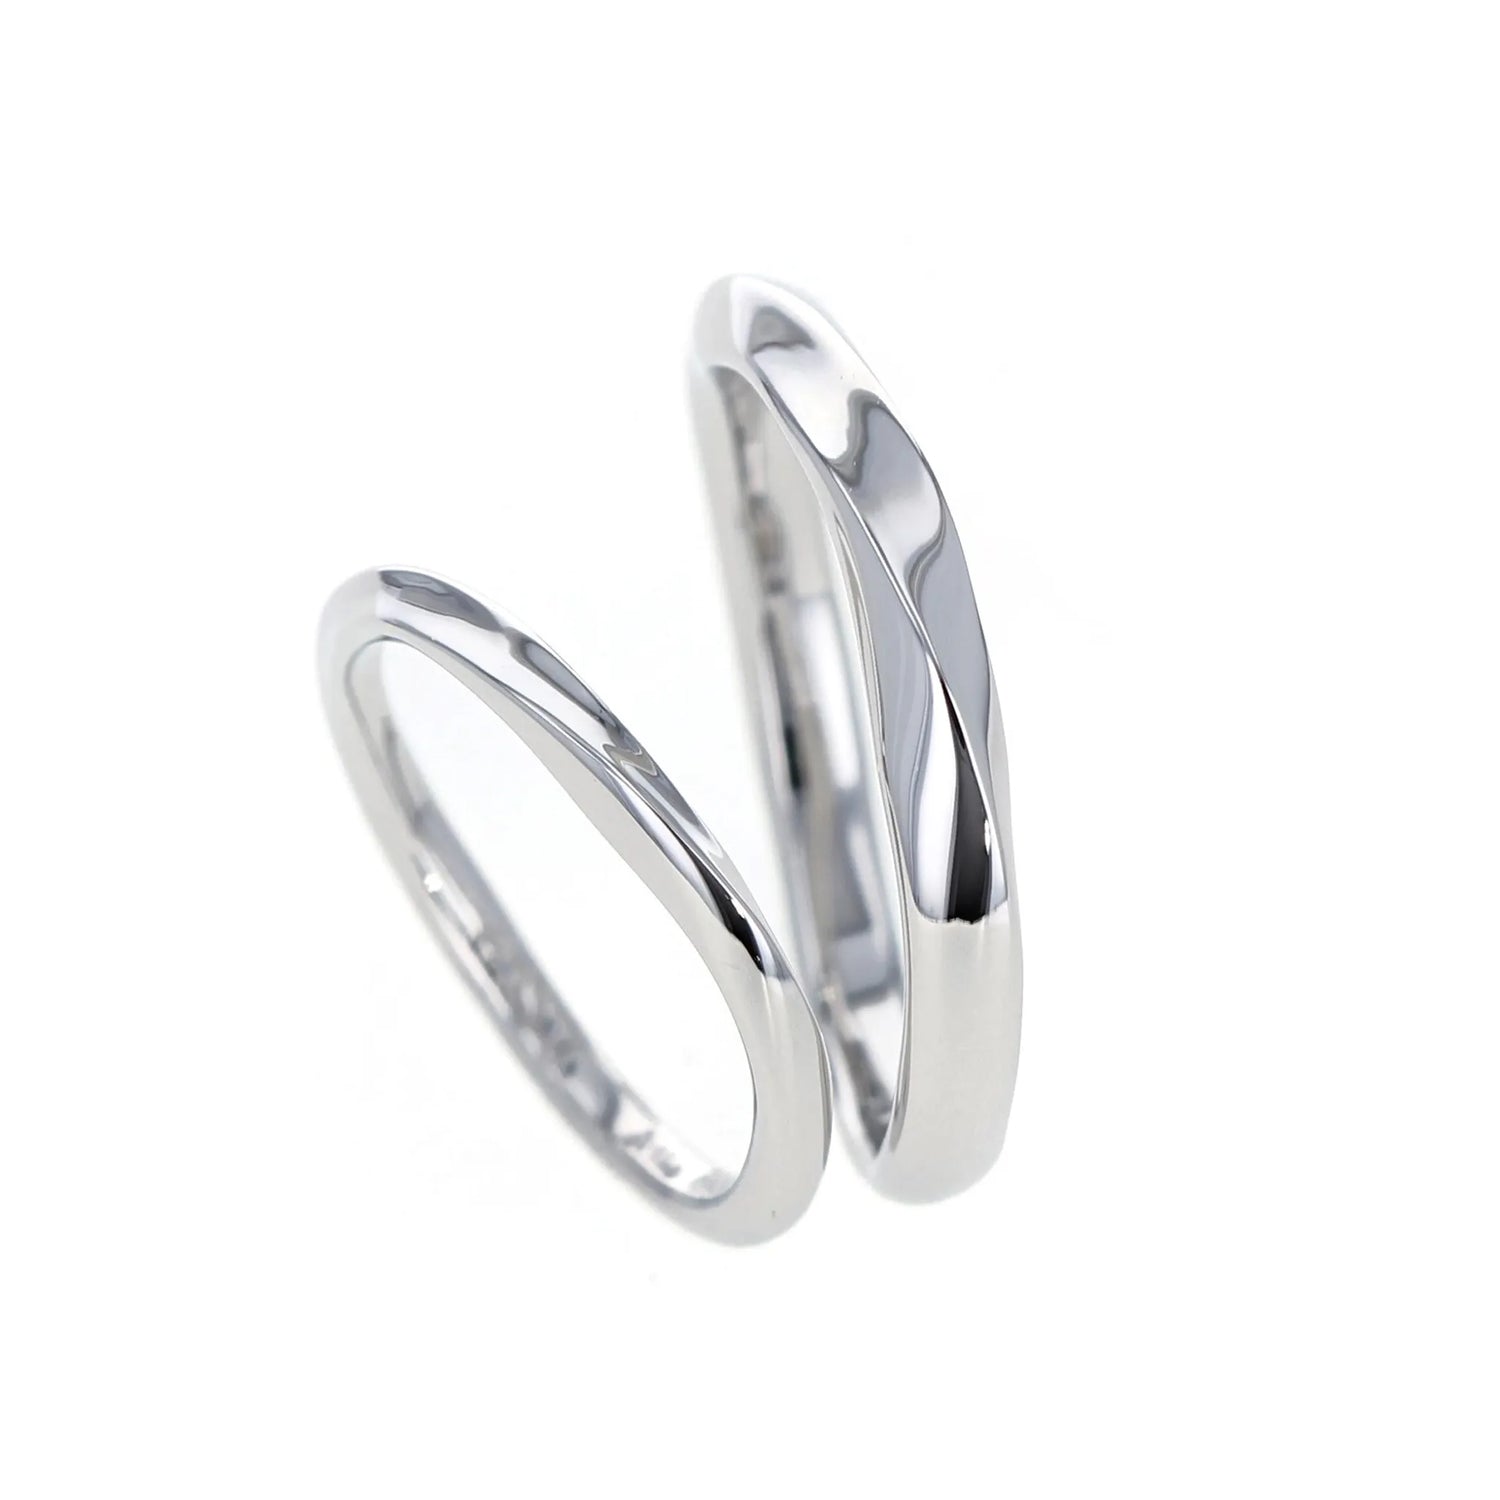  ひねりとエッジのきいたシンプルなデザインの結婚指輪　より斜めから